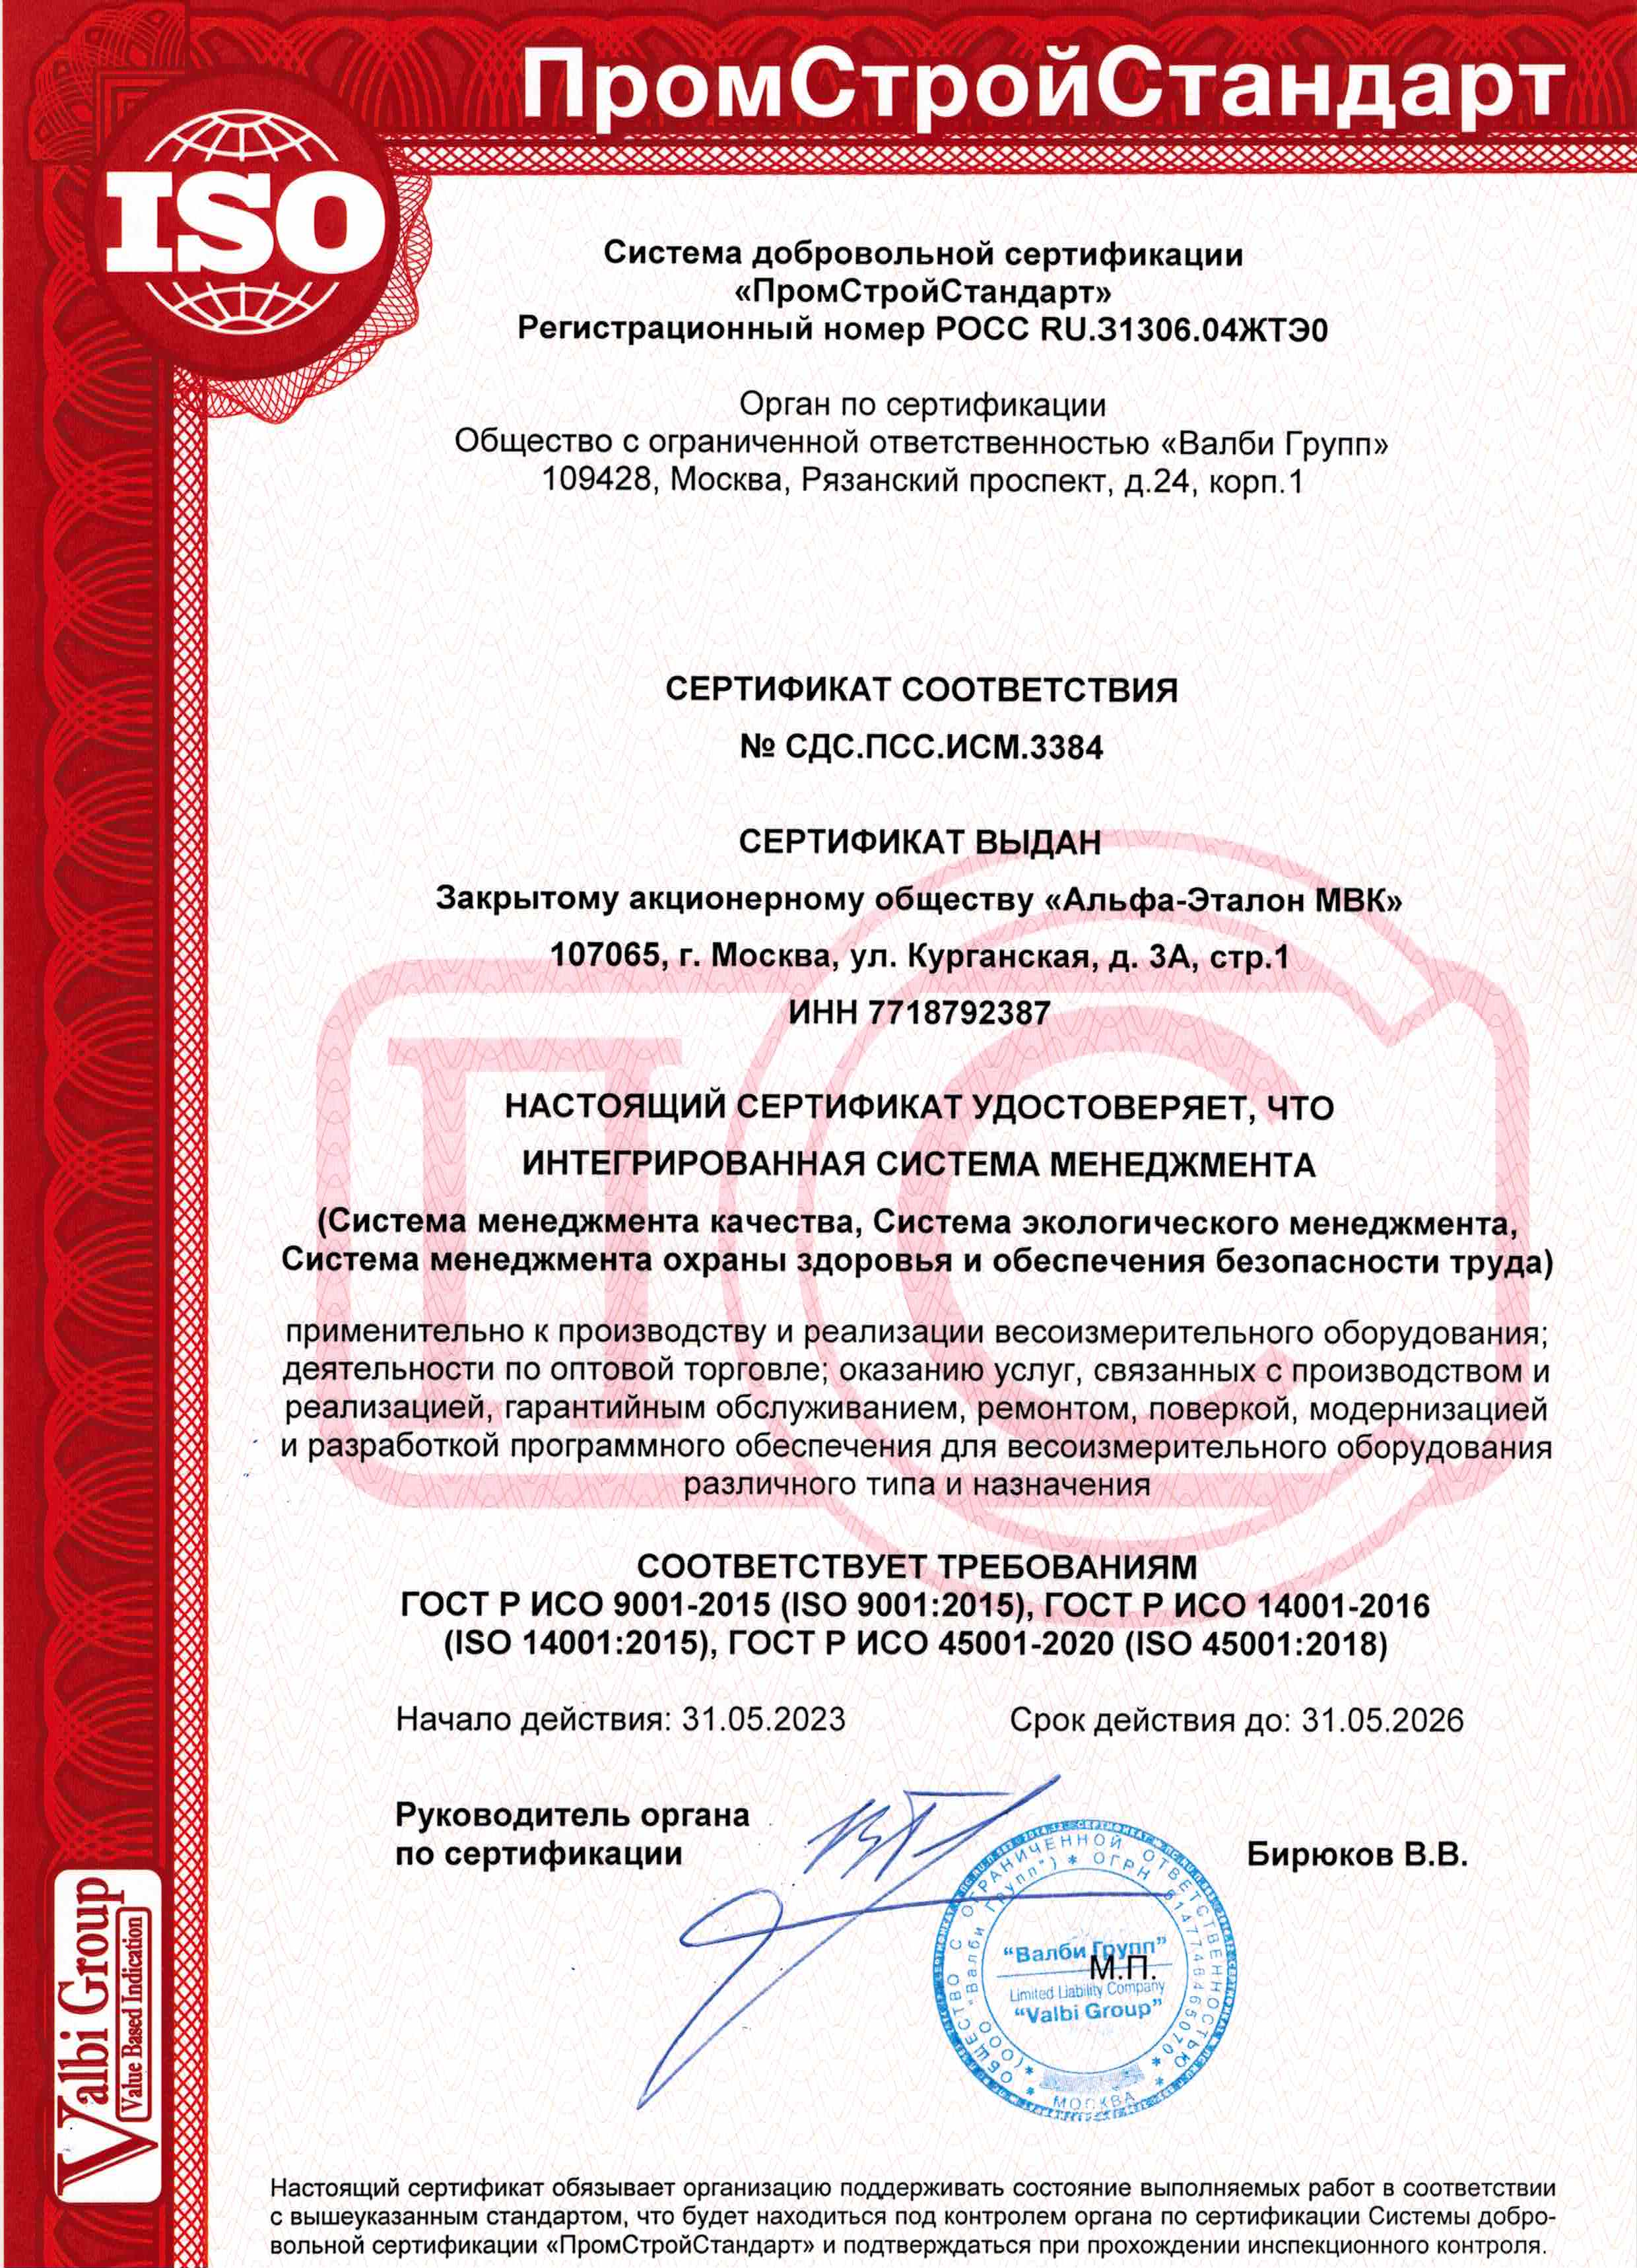 Международный сертификат системы менеджмента качества ИСО 9001